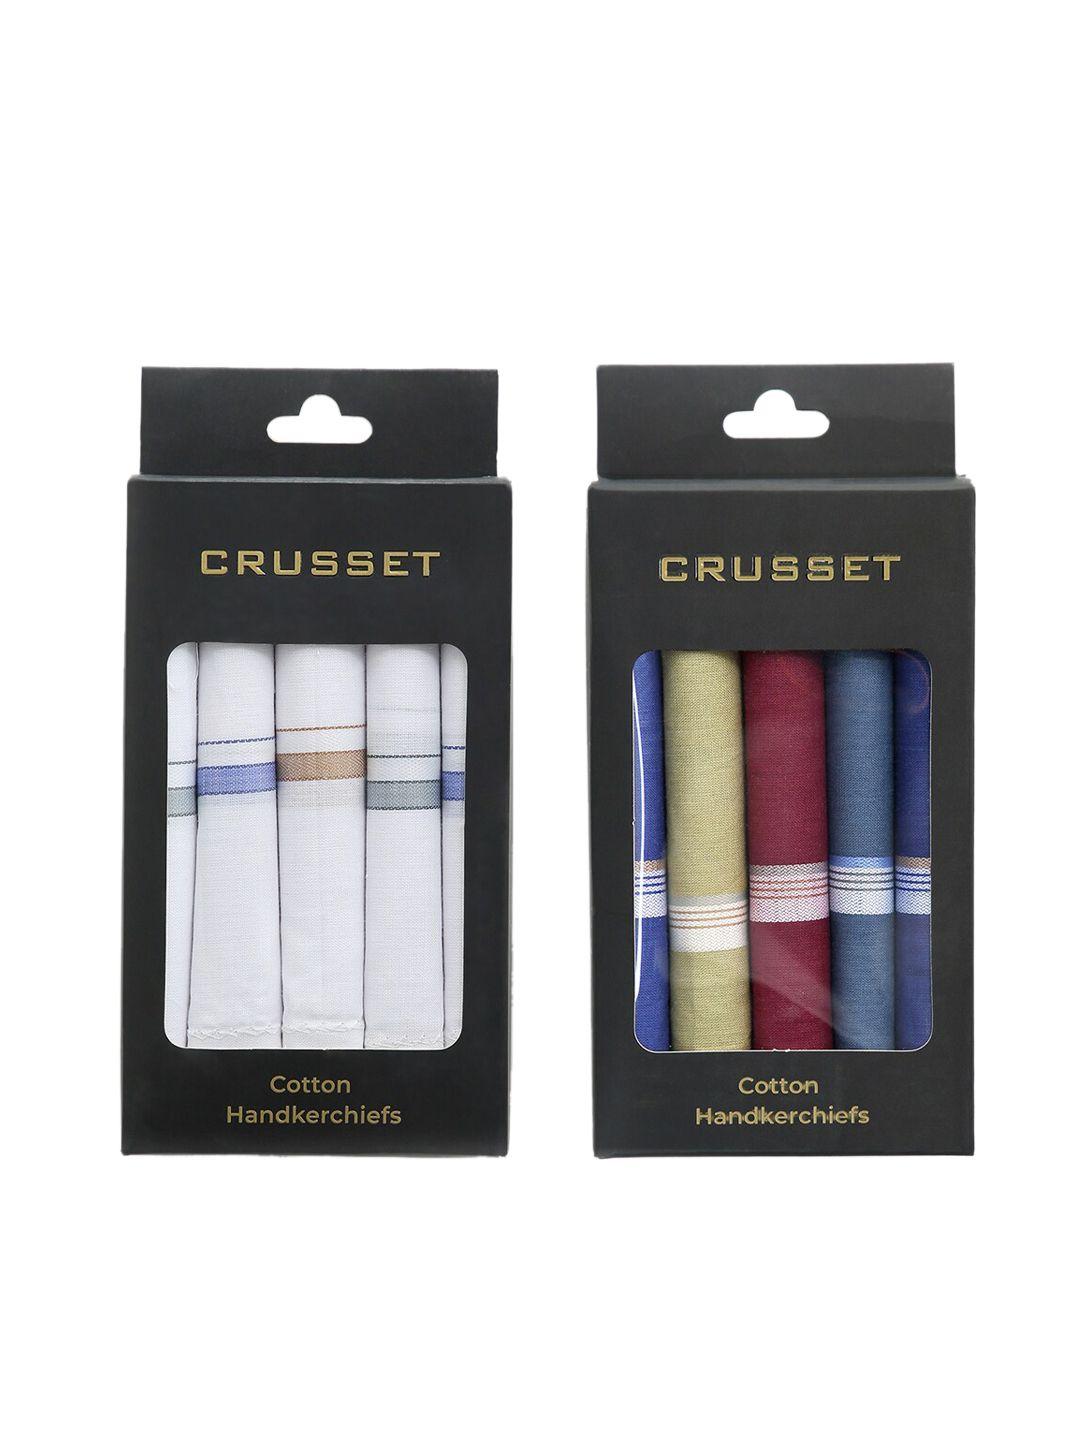 crusset men assorted pack of 10 handkerchiefs